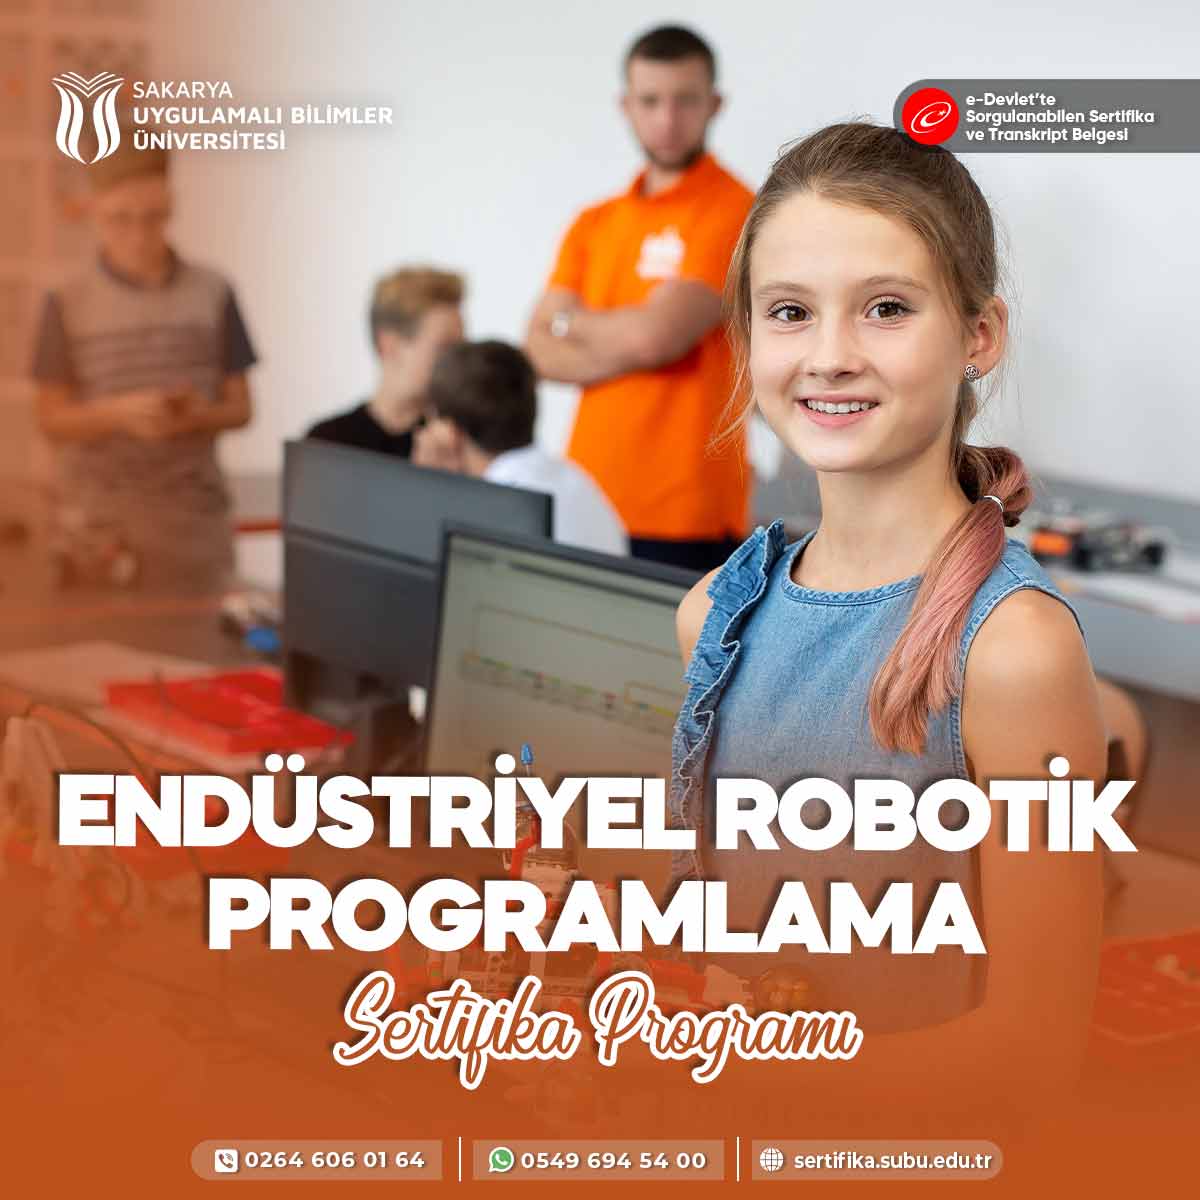 Endüstriyel Robotik Programlama Eğitimi Sertifika Programı